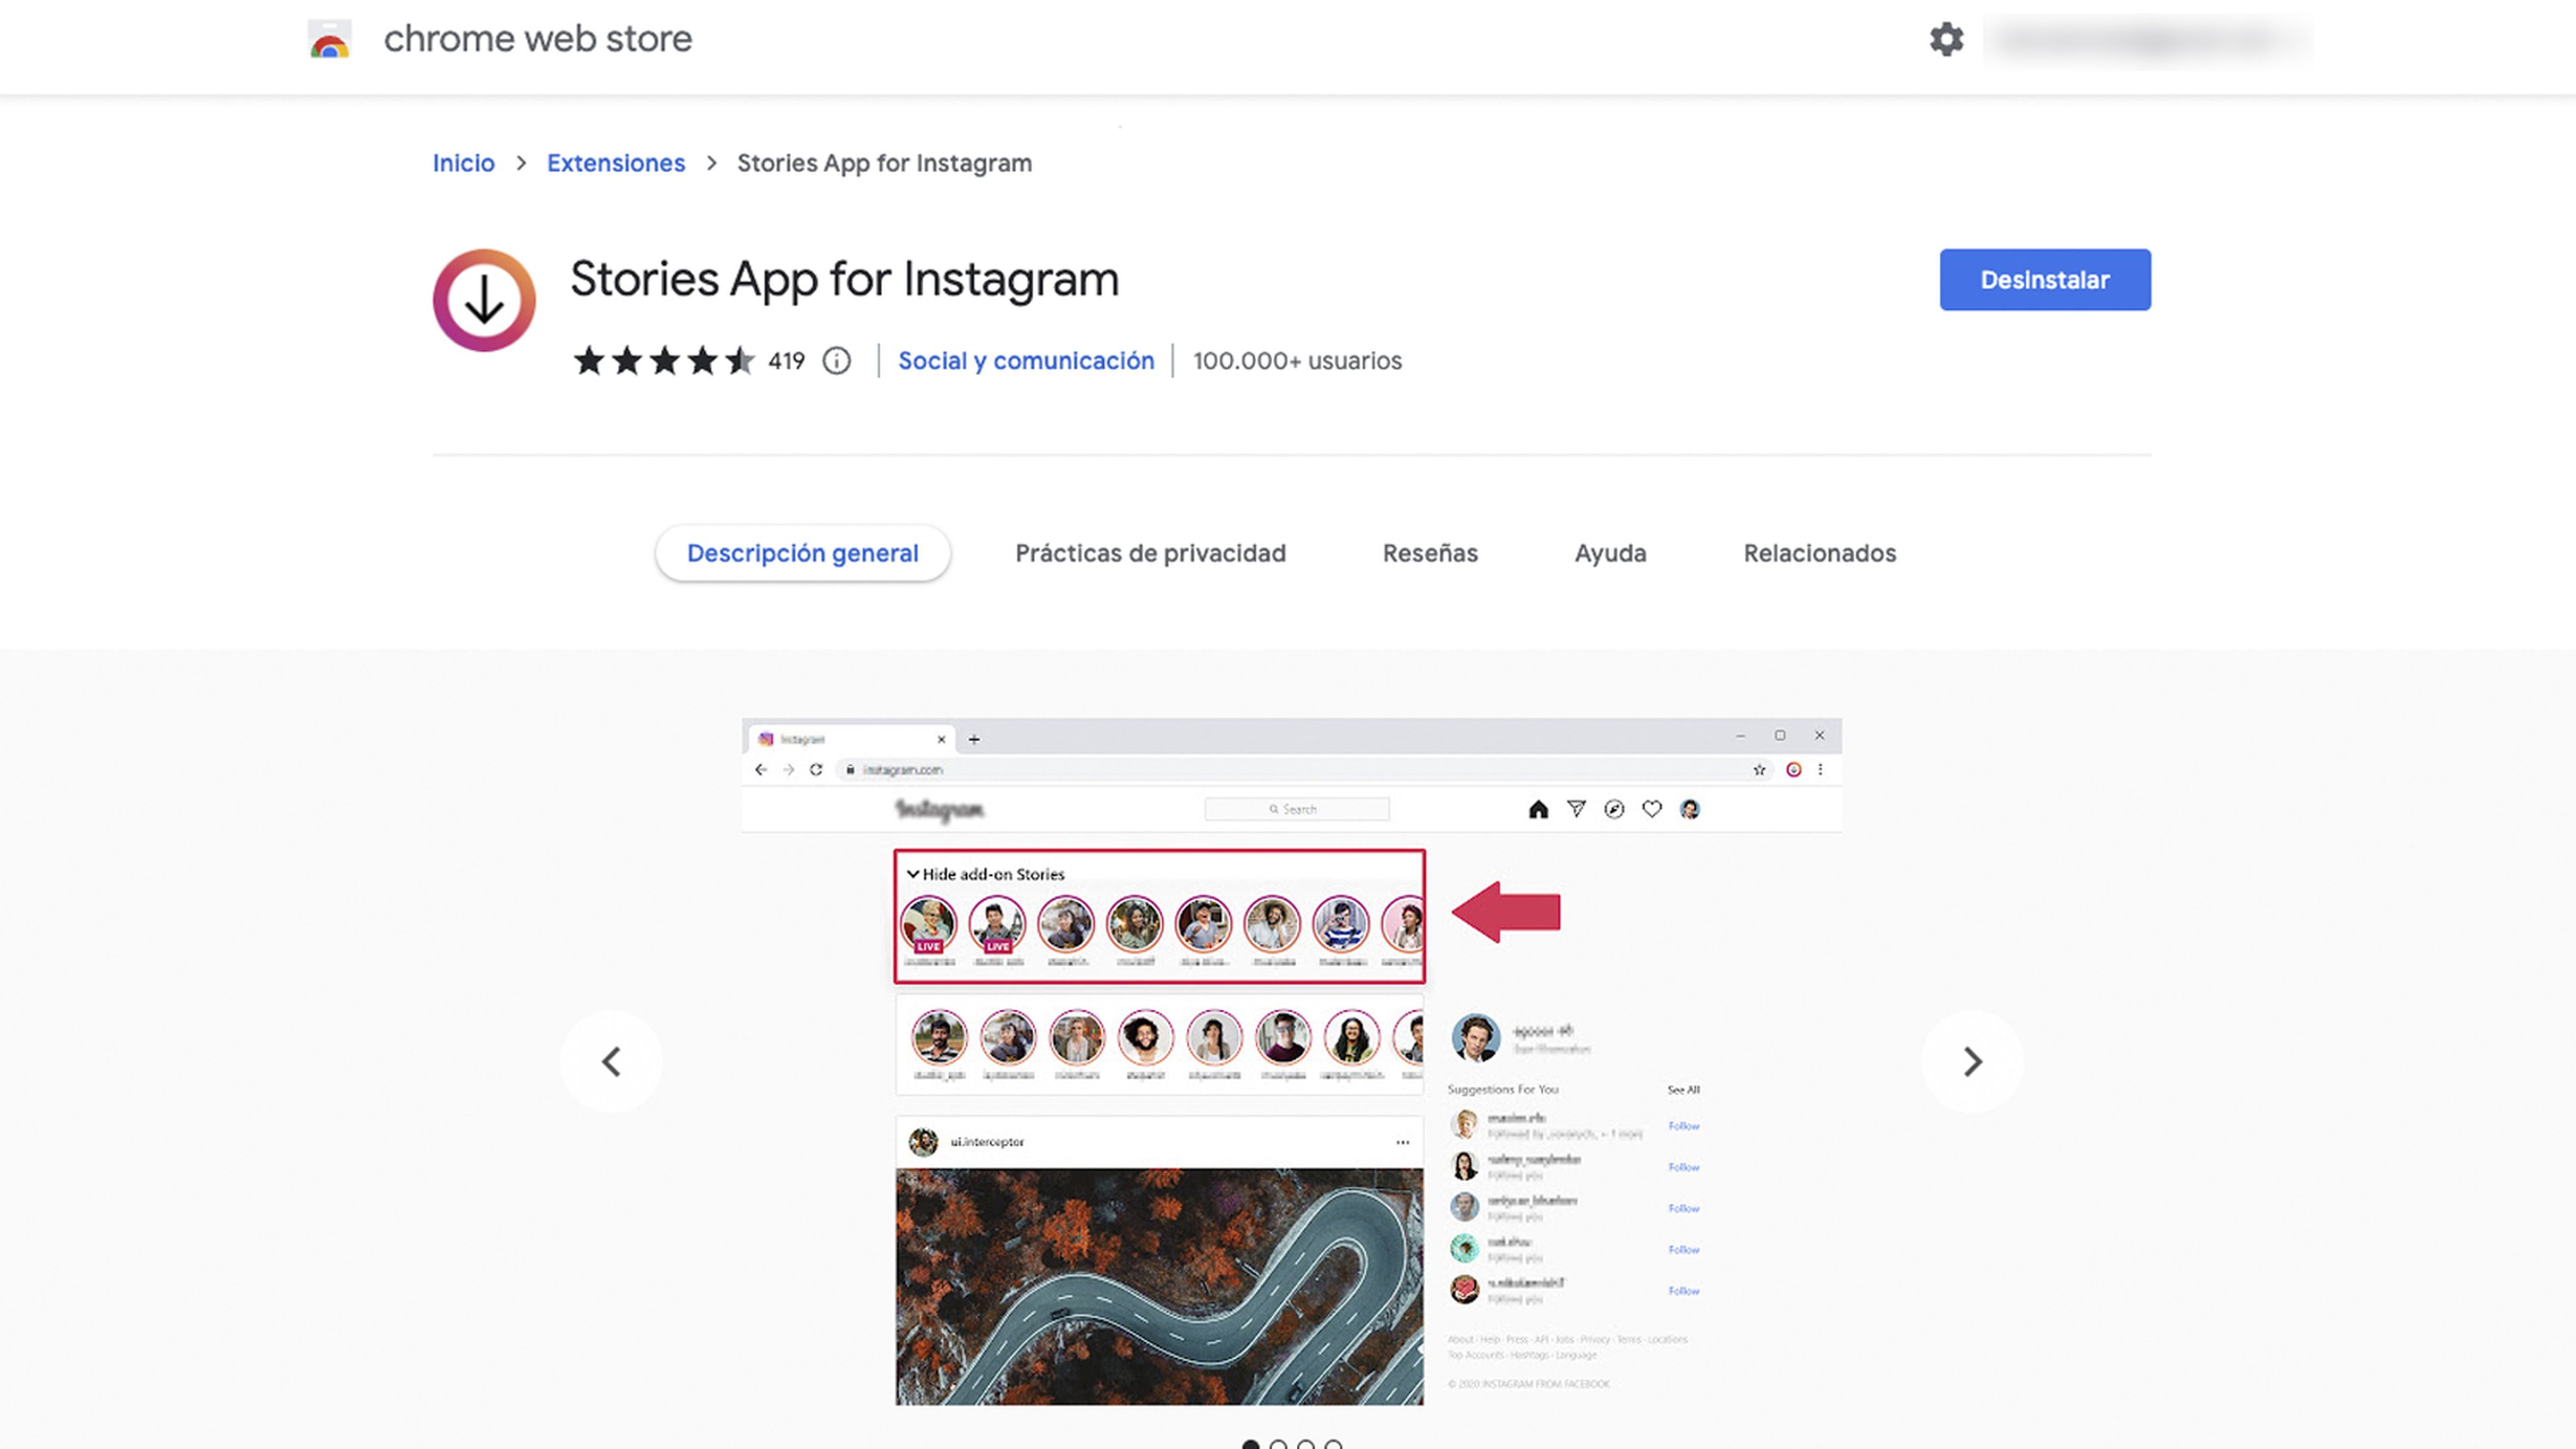 Stories App for Instagram